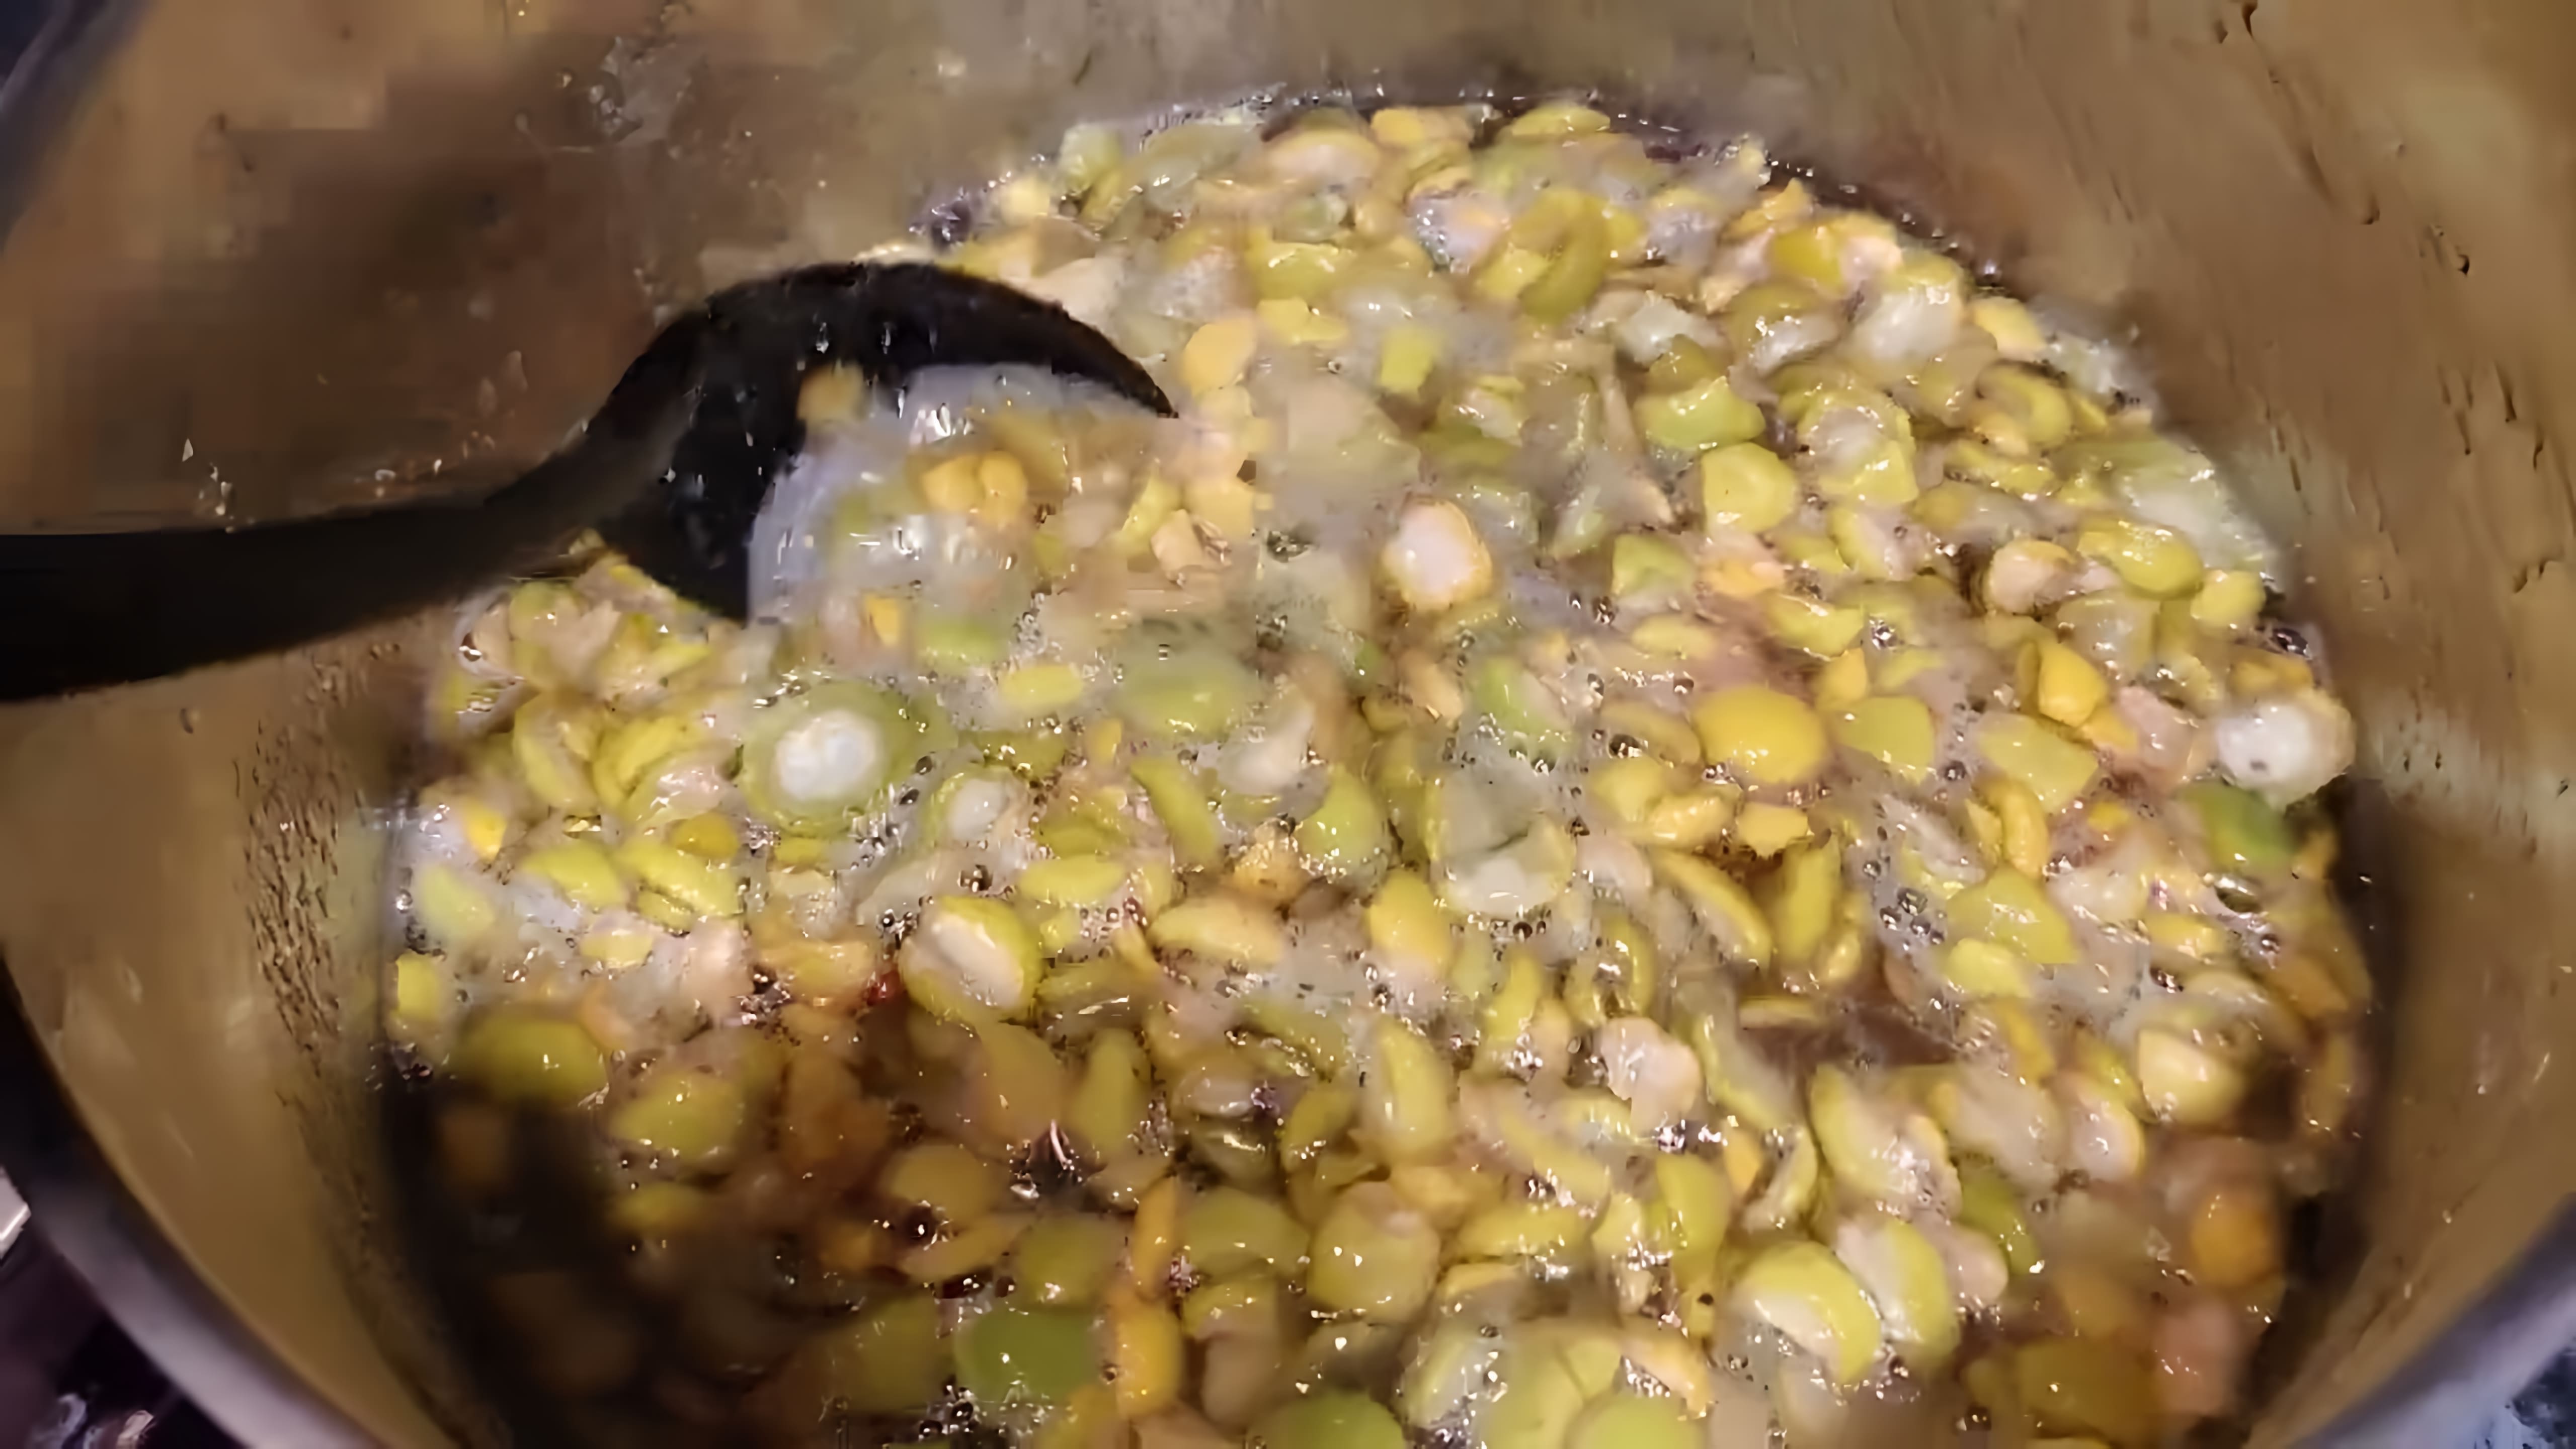 В этом видео демонстрируется процесс приготовления желе из плодов цидонии, также известной как японская айва